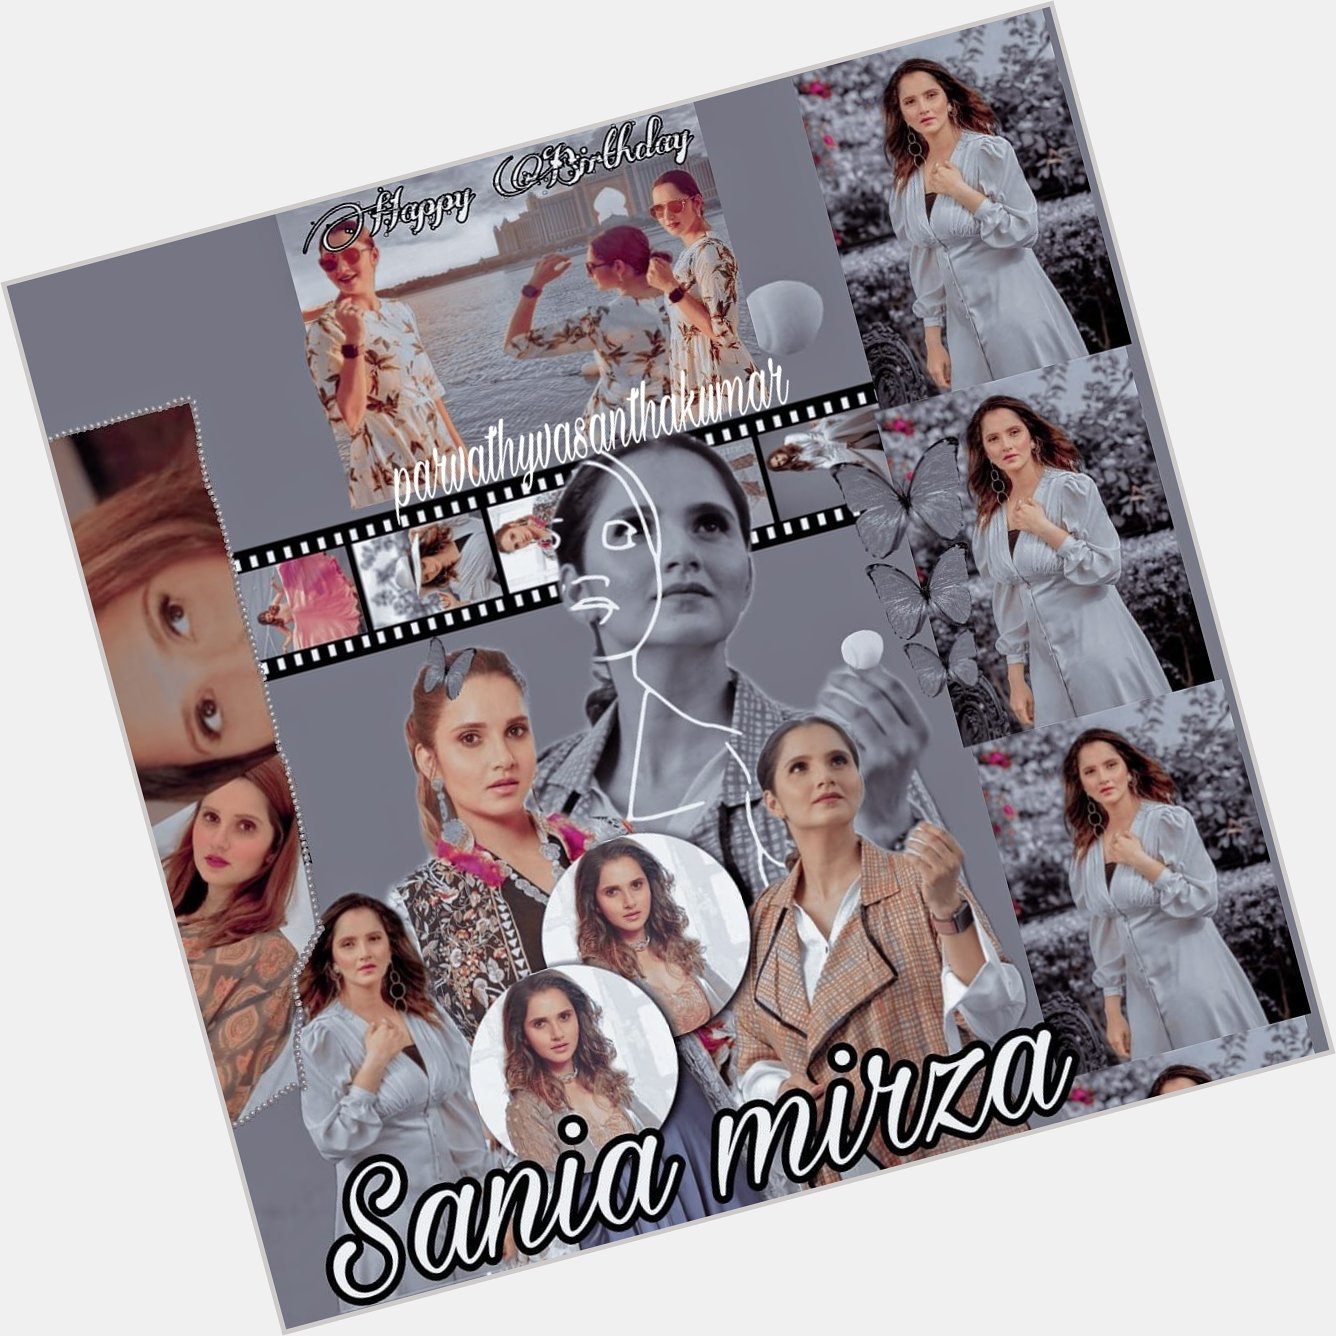 Happy birthday
Sania mirza   